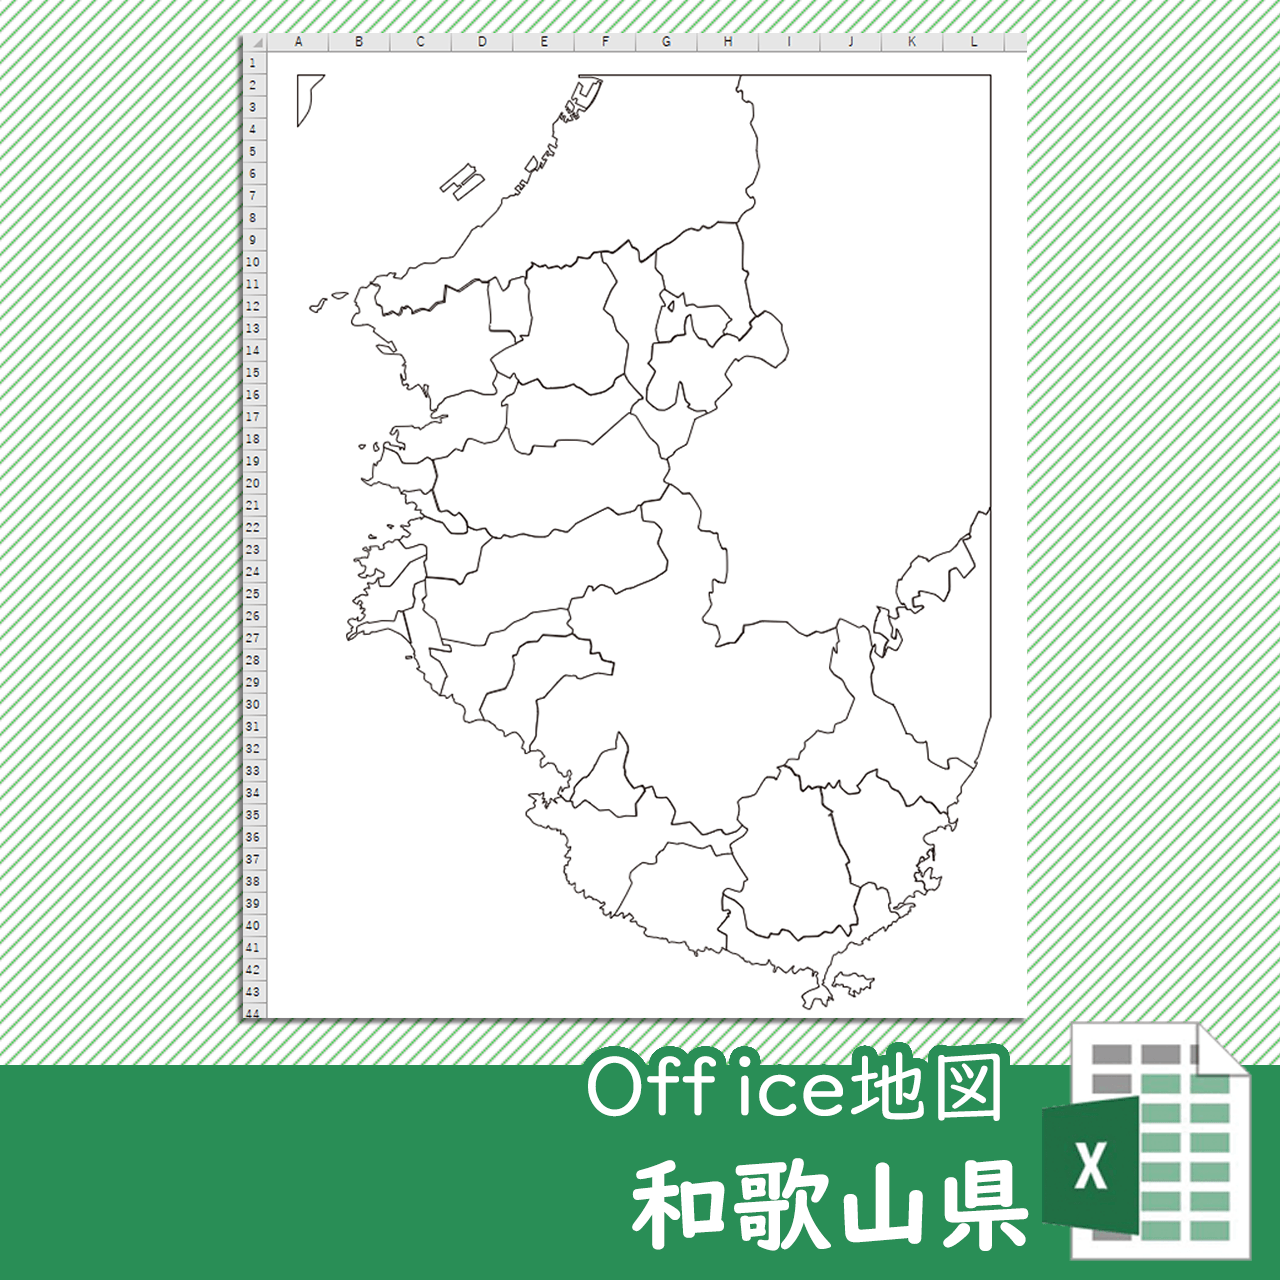 和歌山県のOffice地図のサムネイル